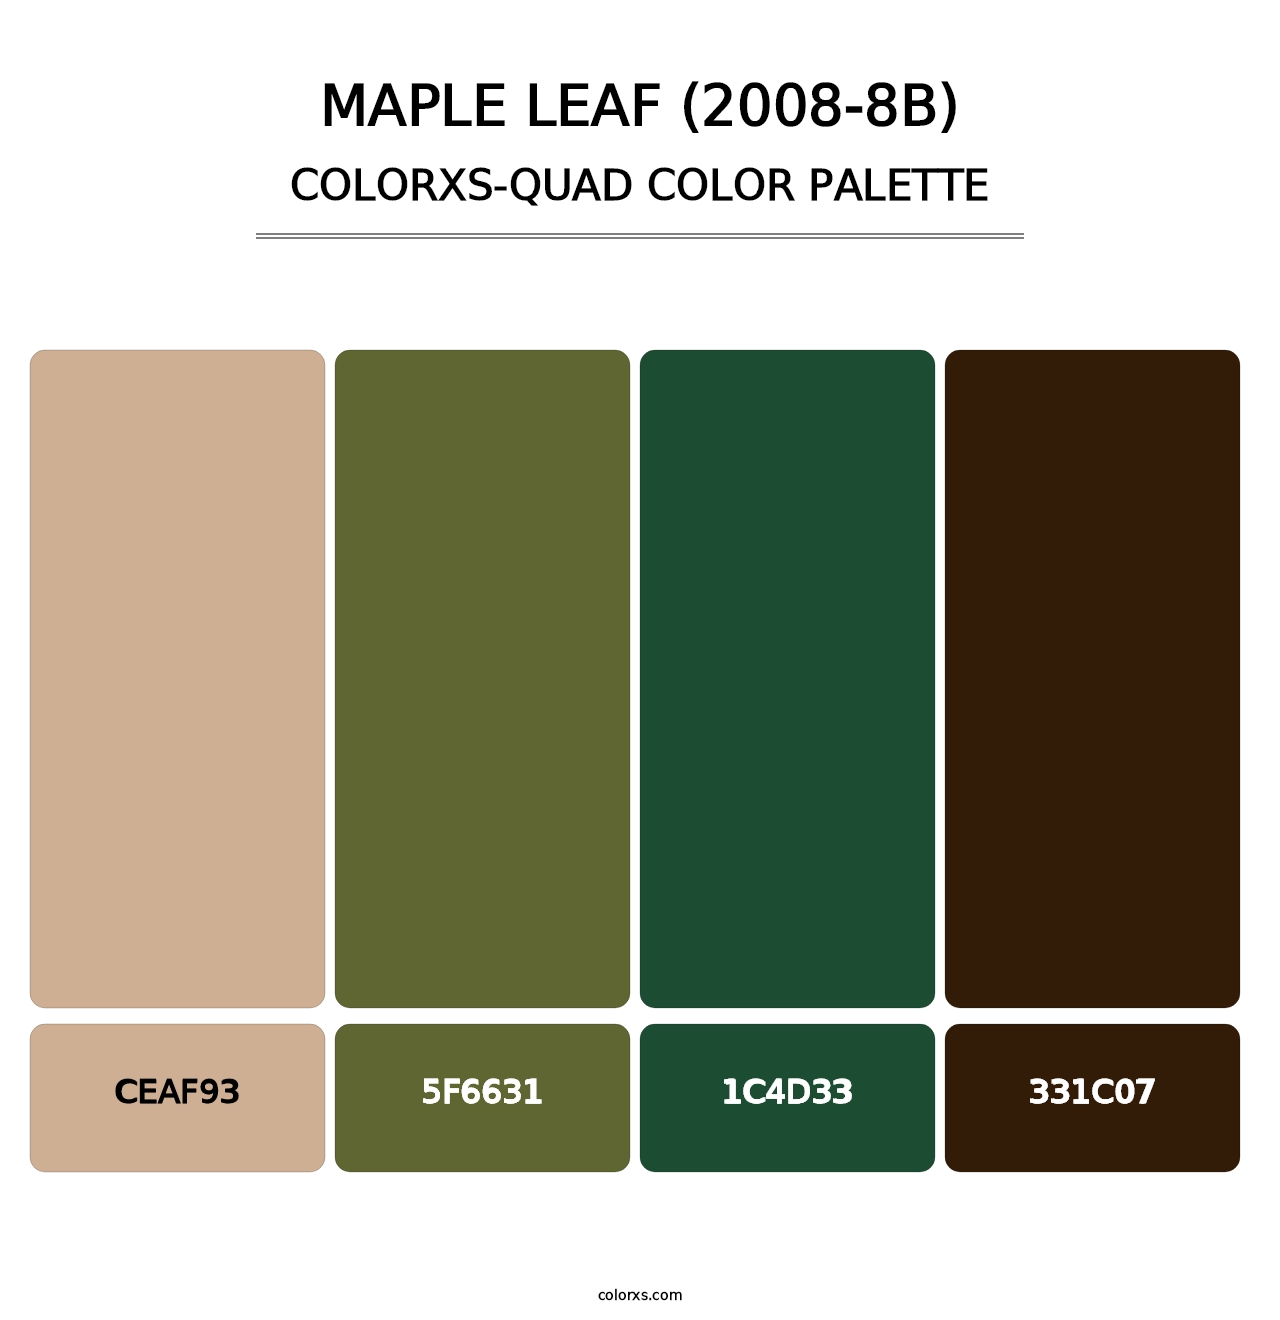 Maple Leaf (2008-8B) - Colorxs Quad Palette